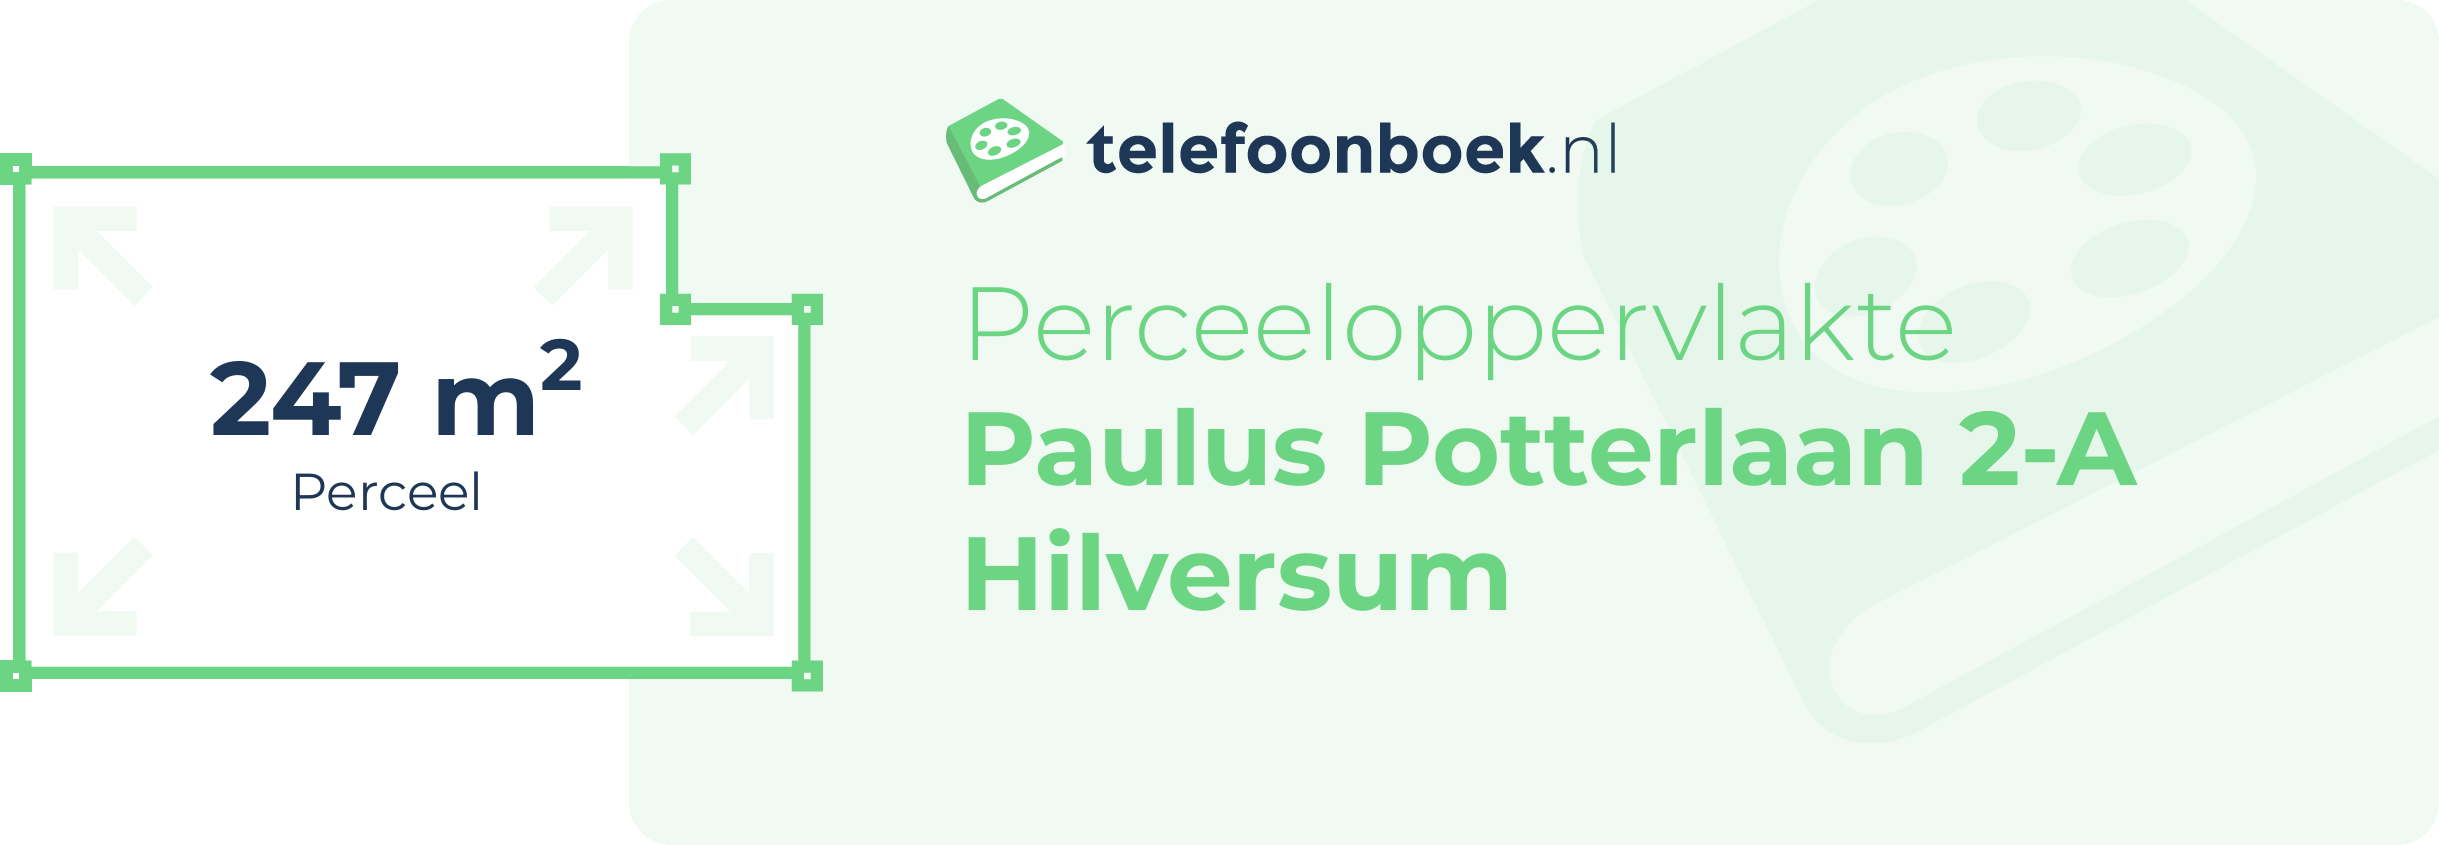 Perceeloppervlakte Paulus Potterlaan 2-A Hilversum